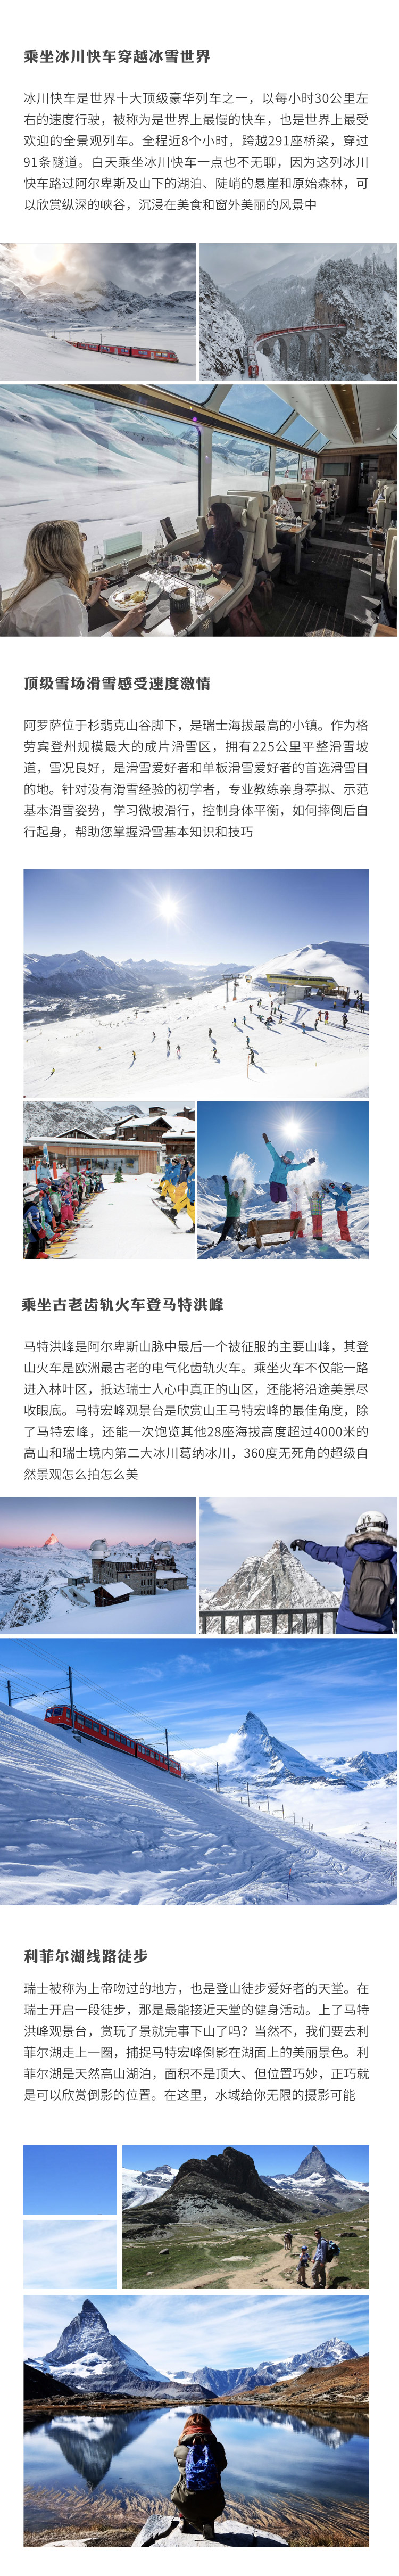 2020春节家庭游·瑞士冰雪穿越之旅